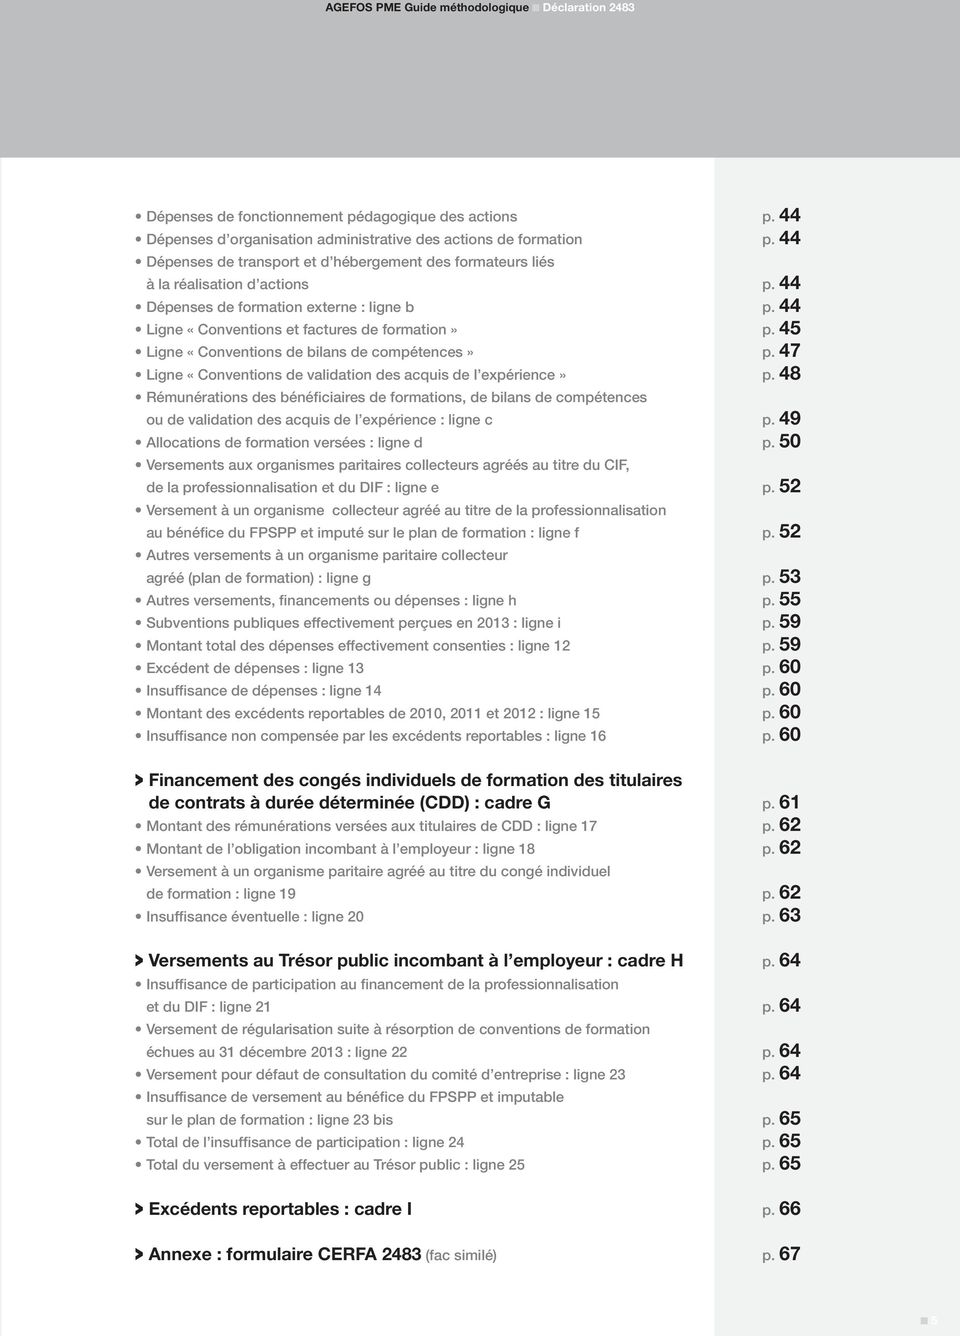 45 Ligne «Conventions de bilans de compétences» p. 47 Ligne «Conventions de validation des acquis de l expérience» p.